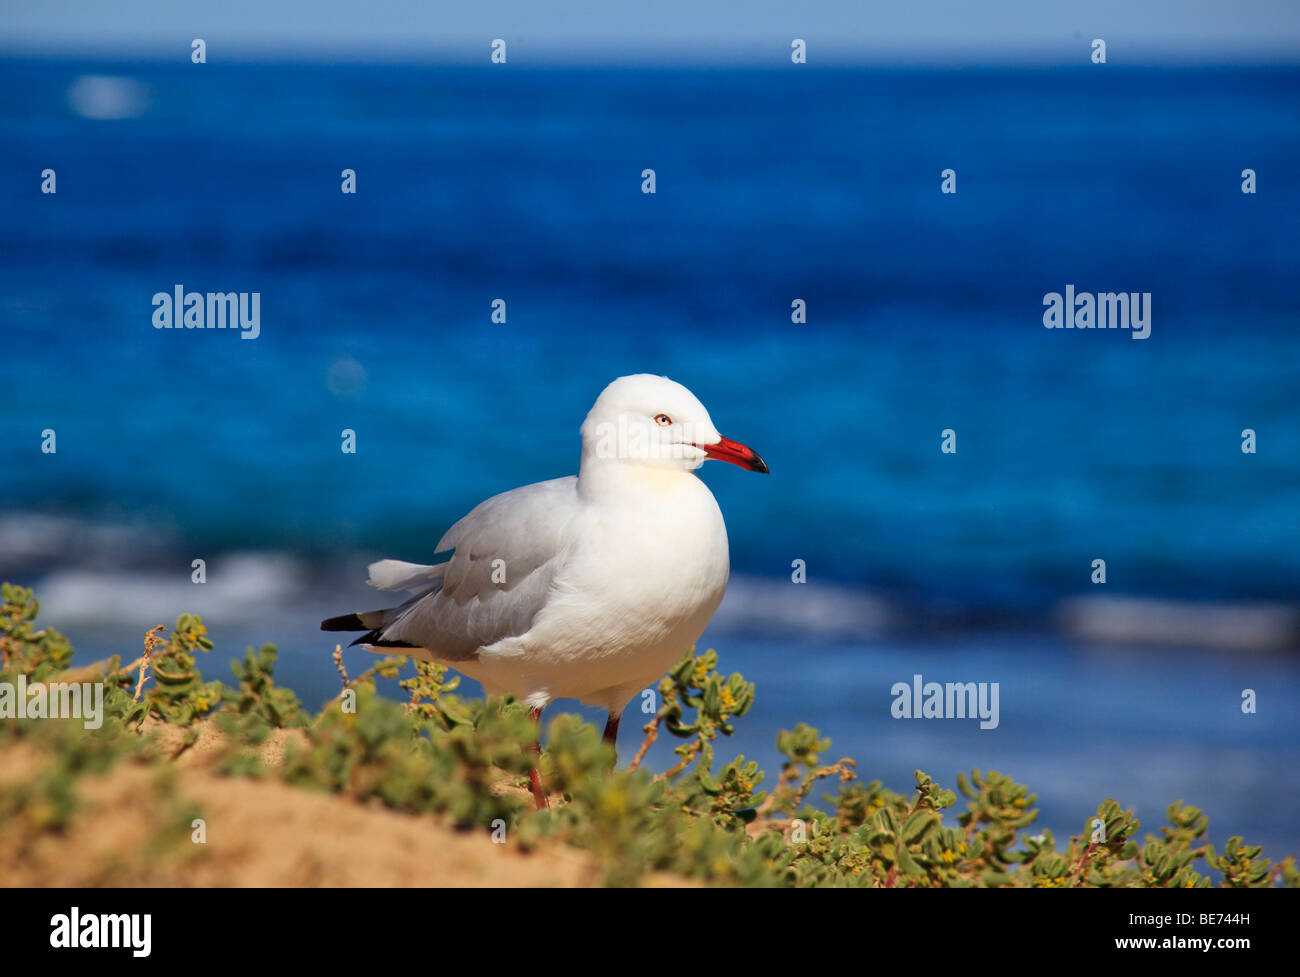 The sea gull in Perth, Western Australia, Australia Stock Photo